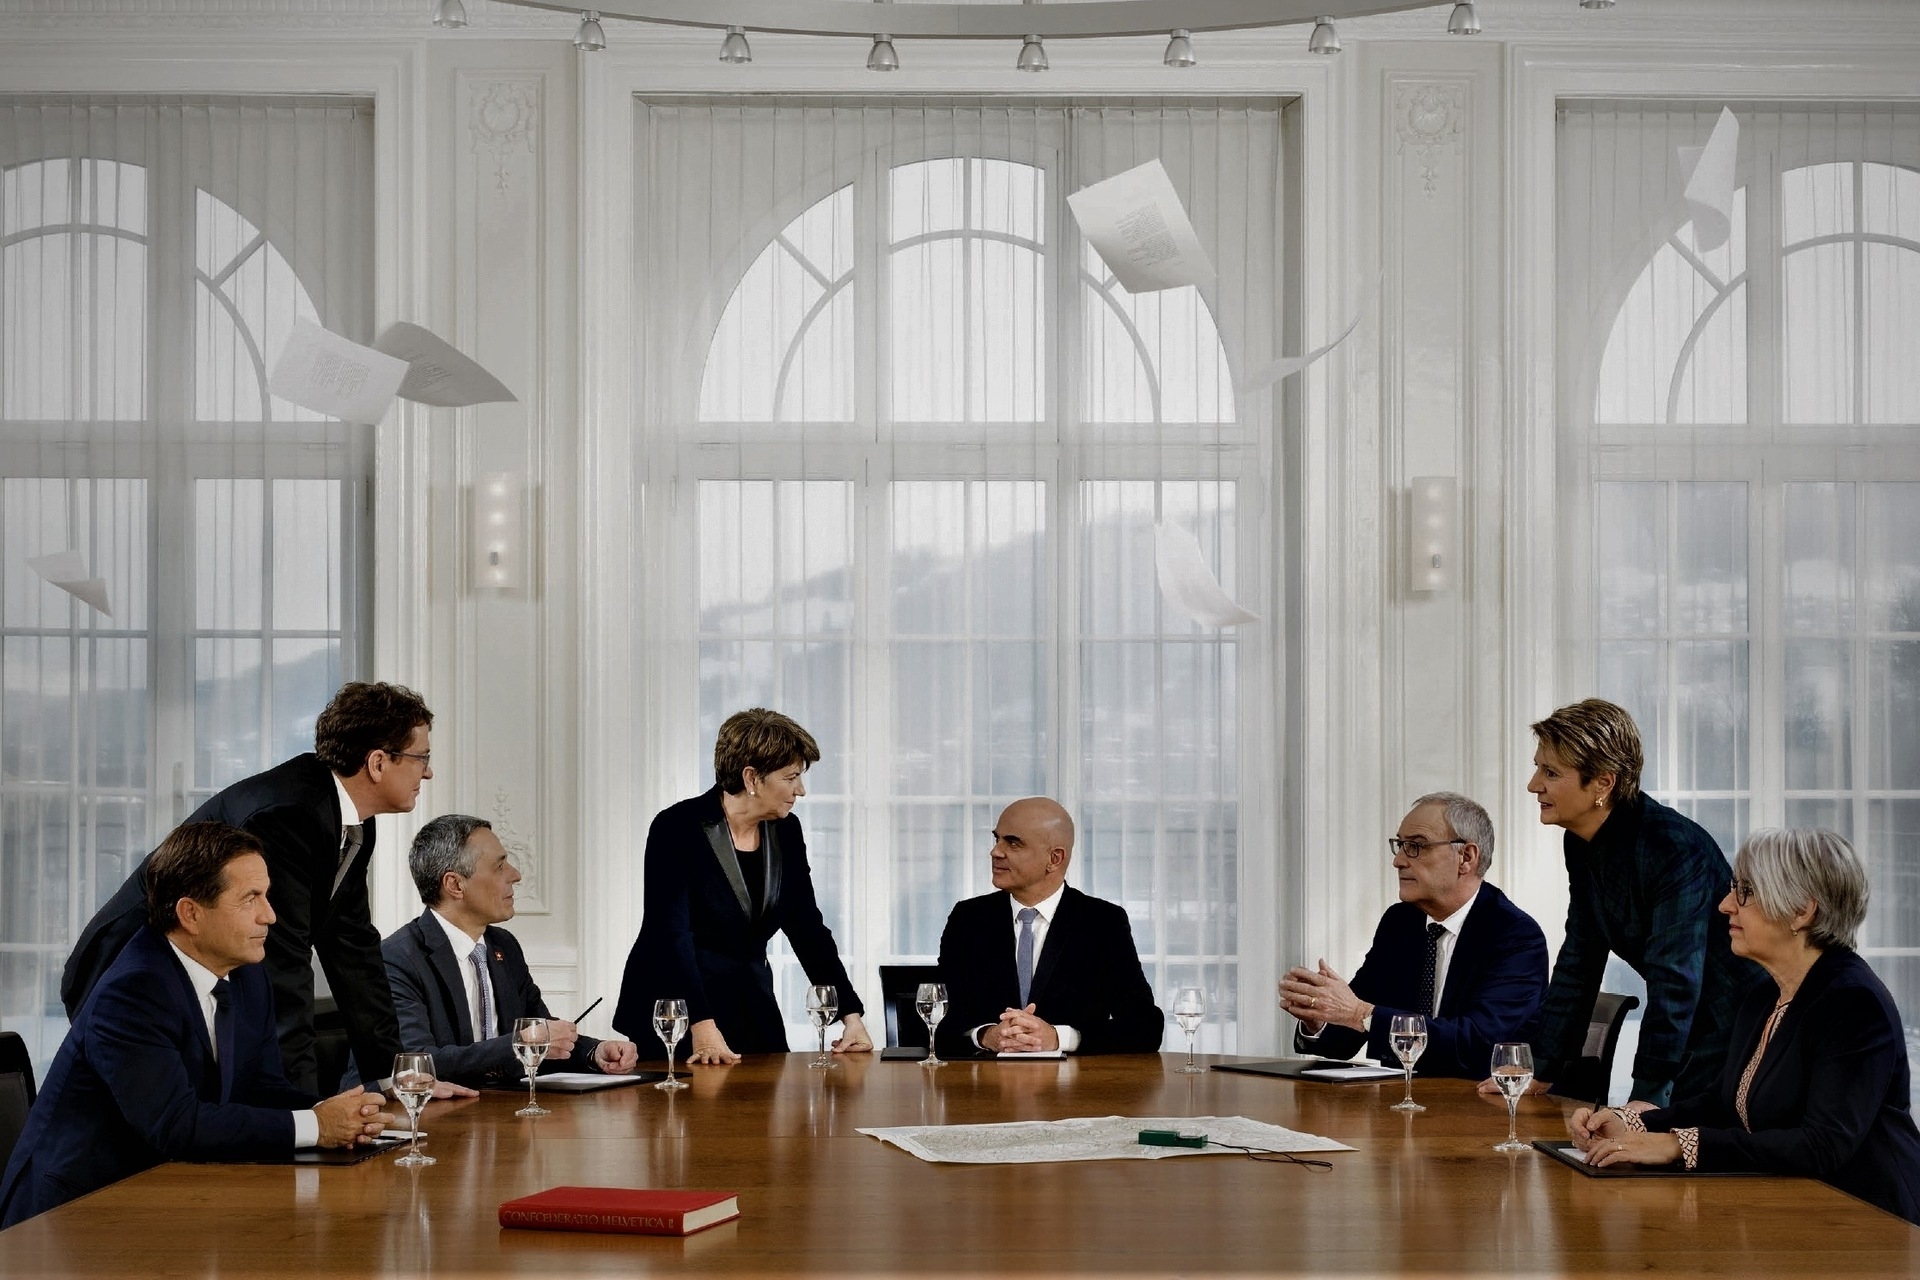 2023 年世界經濟論壇：瑞士聯邦聯邦委員會 2023 年官方照片：從左到右為聯邦總理沃爾特·圖恩赫爾 (Walter Thurnherr) 和聯邦委員阿爾伯特·羅斯蒂 (Albert Rösti)、伊格納齊奧·卡西斯 (Ignazio Cassis)、維奧拉·阿姆赫德 (Viola Amherd)（副主席）、阿蘭·貝爾賽 (Alain Berset)（主席）、蓋伊 (Guy)帕梅林、卡琳·凱勒-薩特和伊麗莎白·波美-施奈德